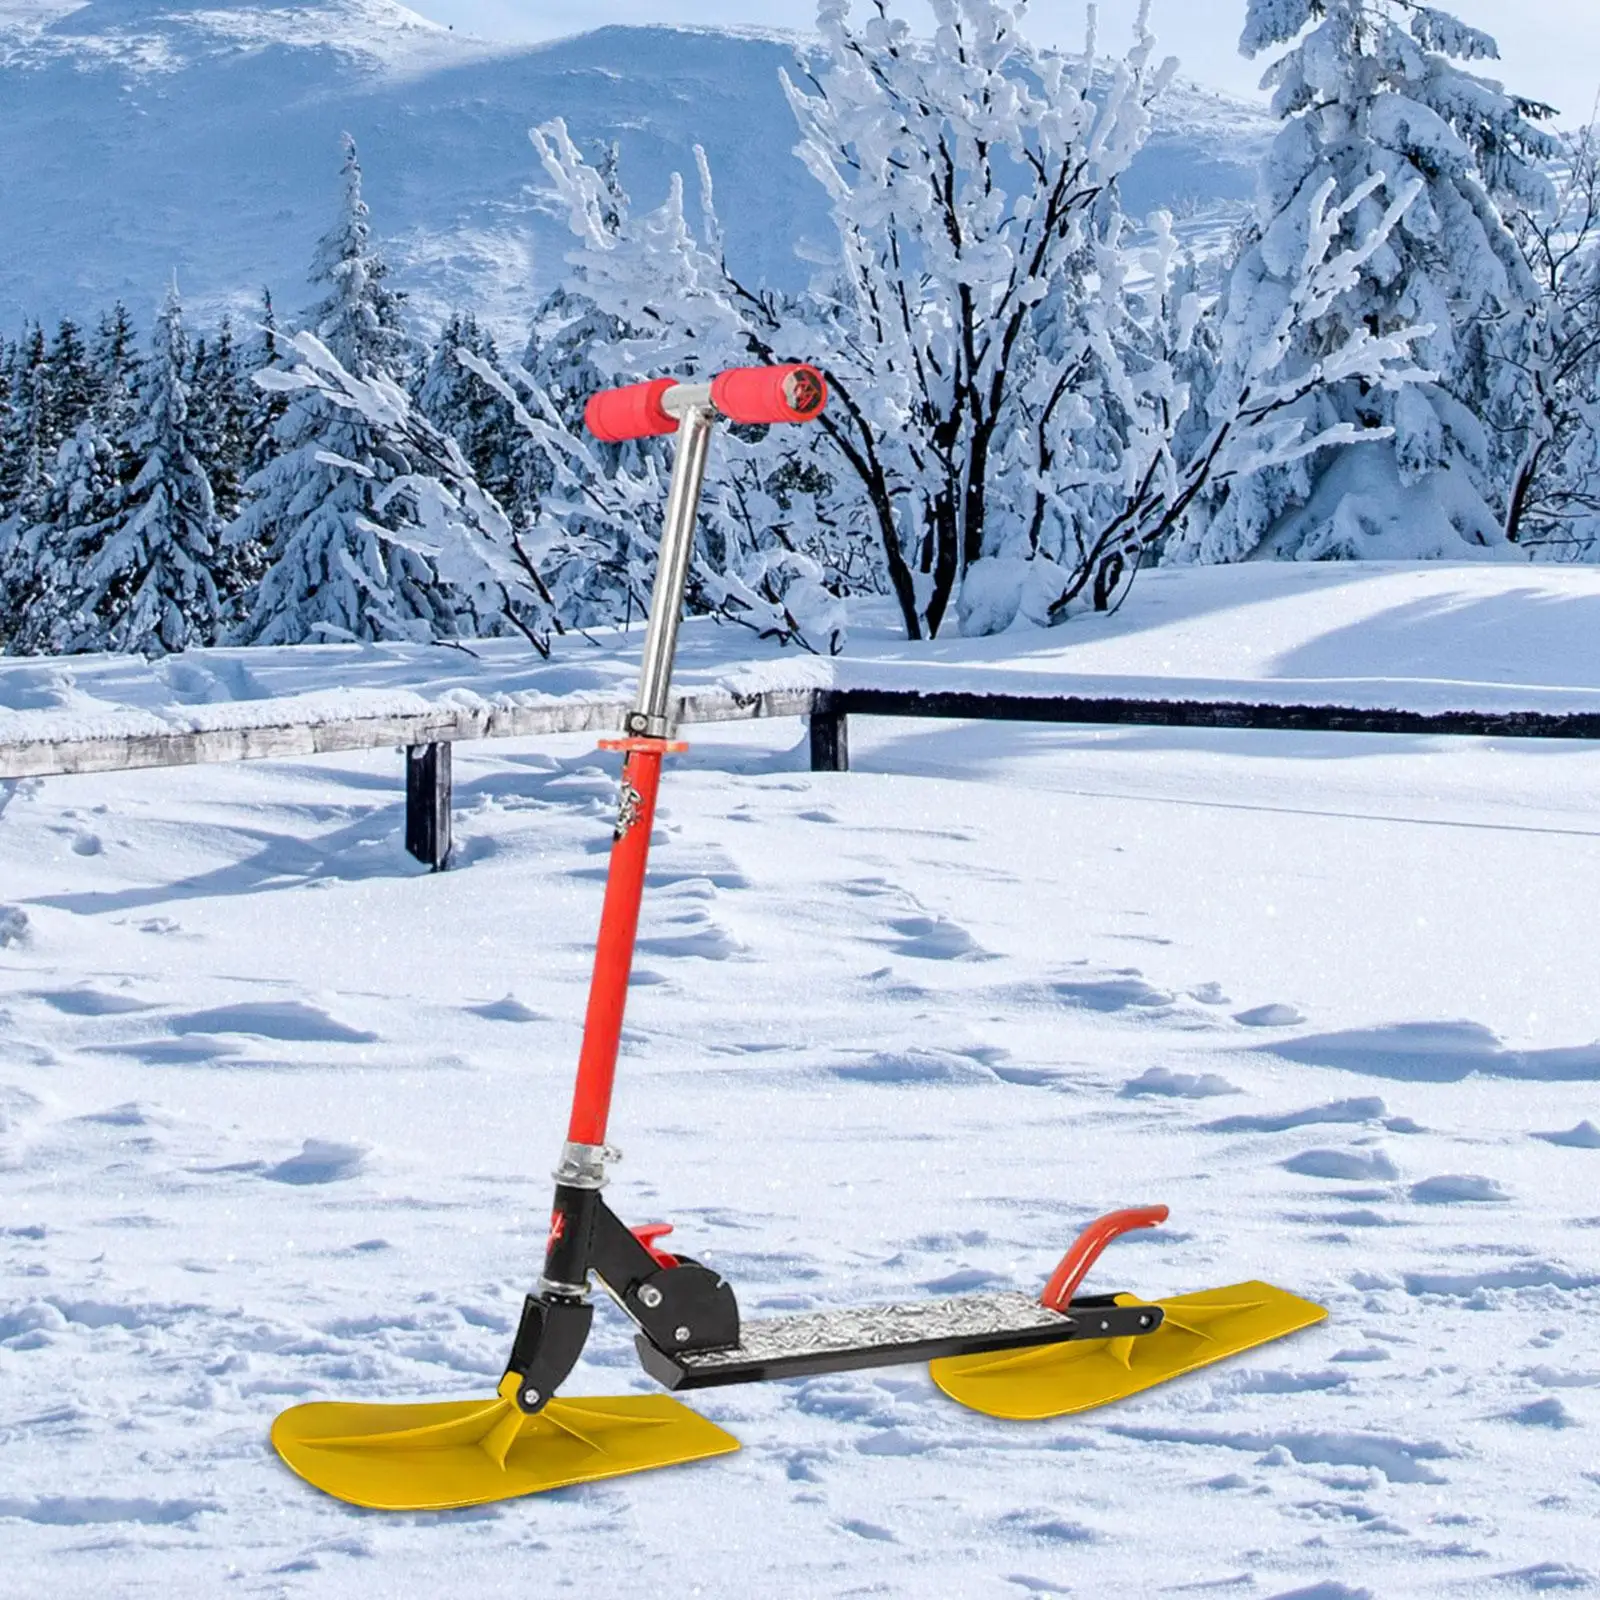 2шт Снежный скутер Лыжные сани Лыжная доска для катания на сноуборде зимой на открытом воздухе